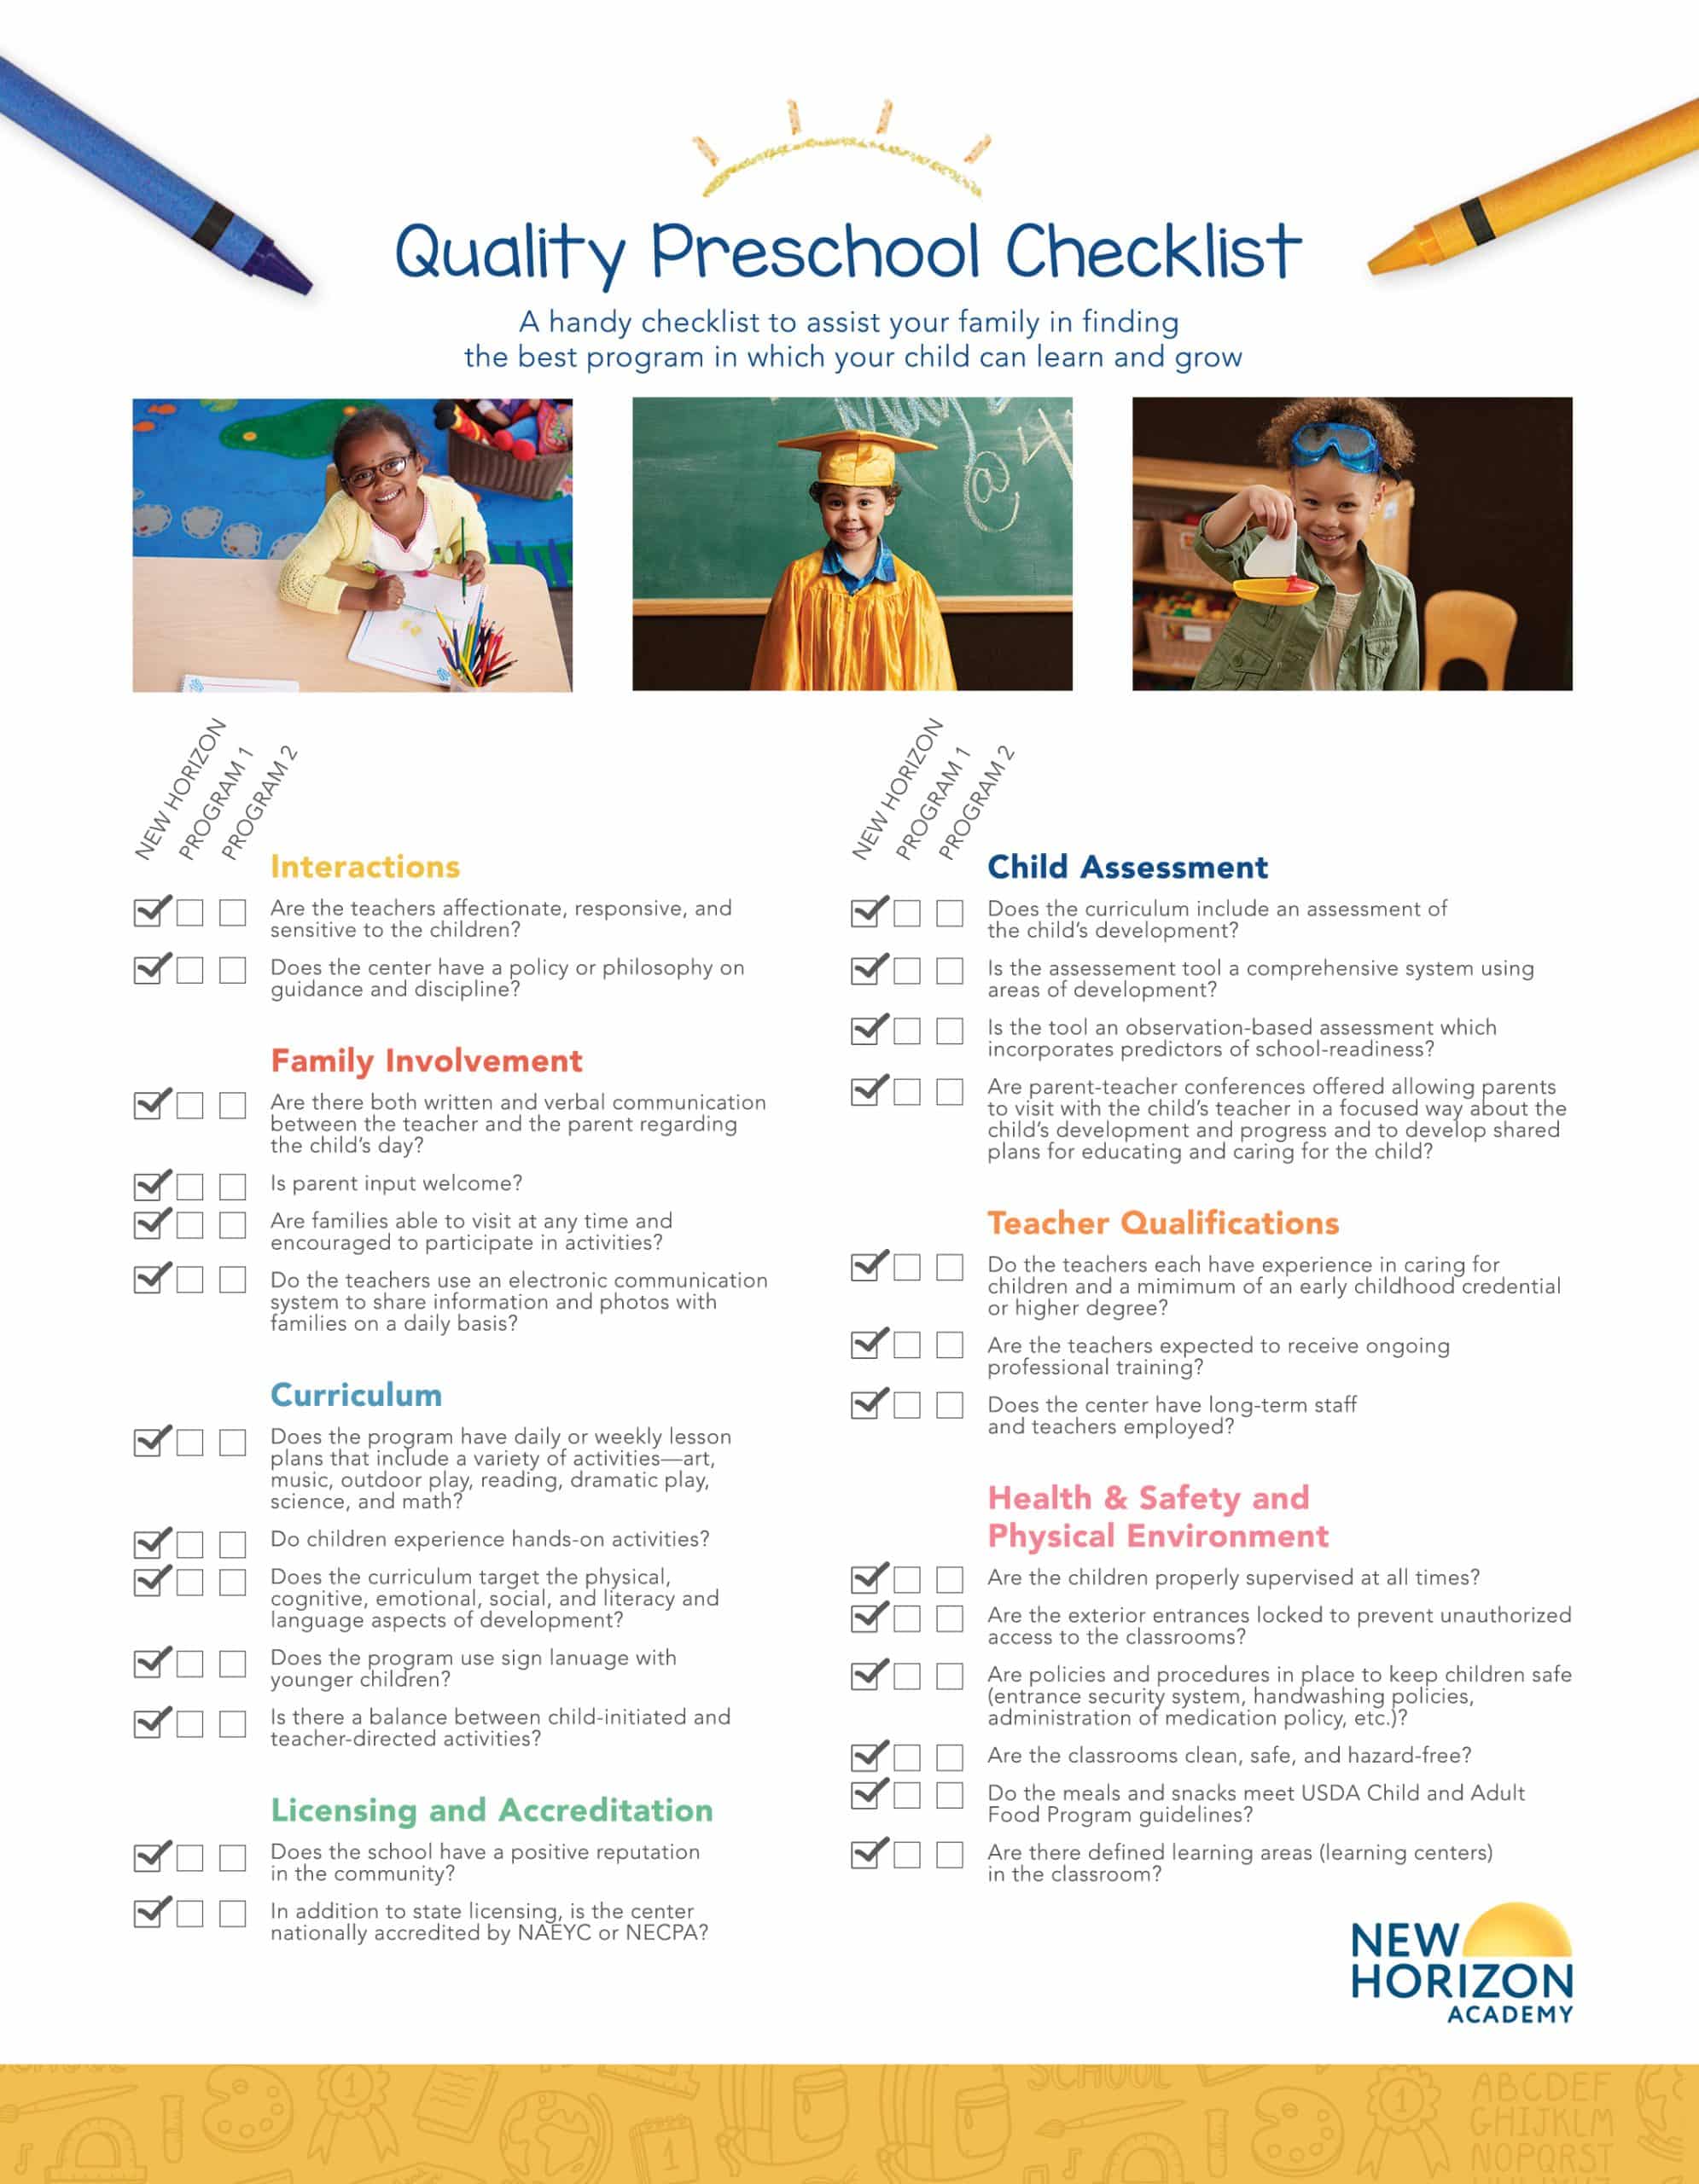 Quality Preschool Checklist